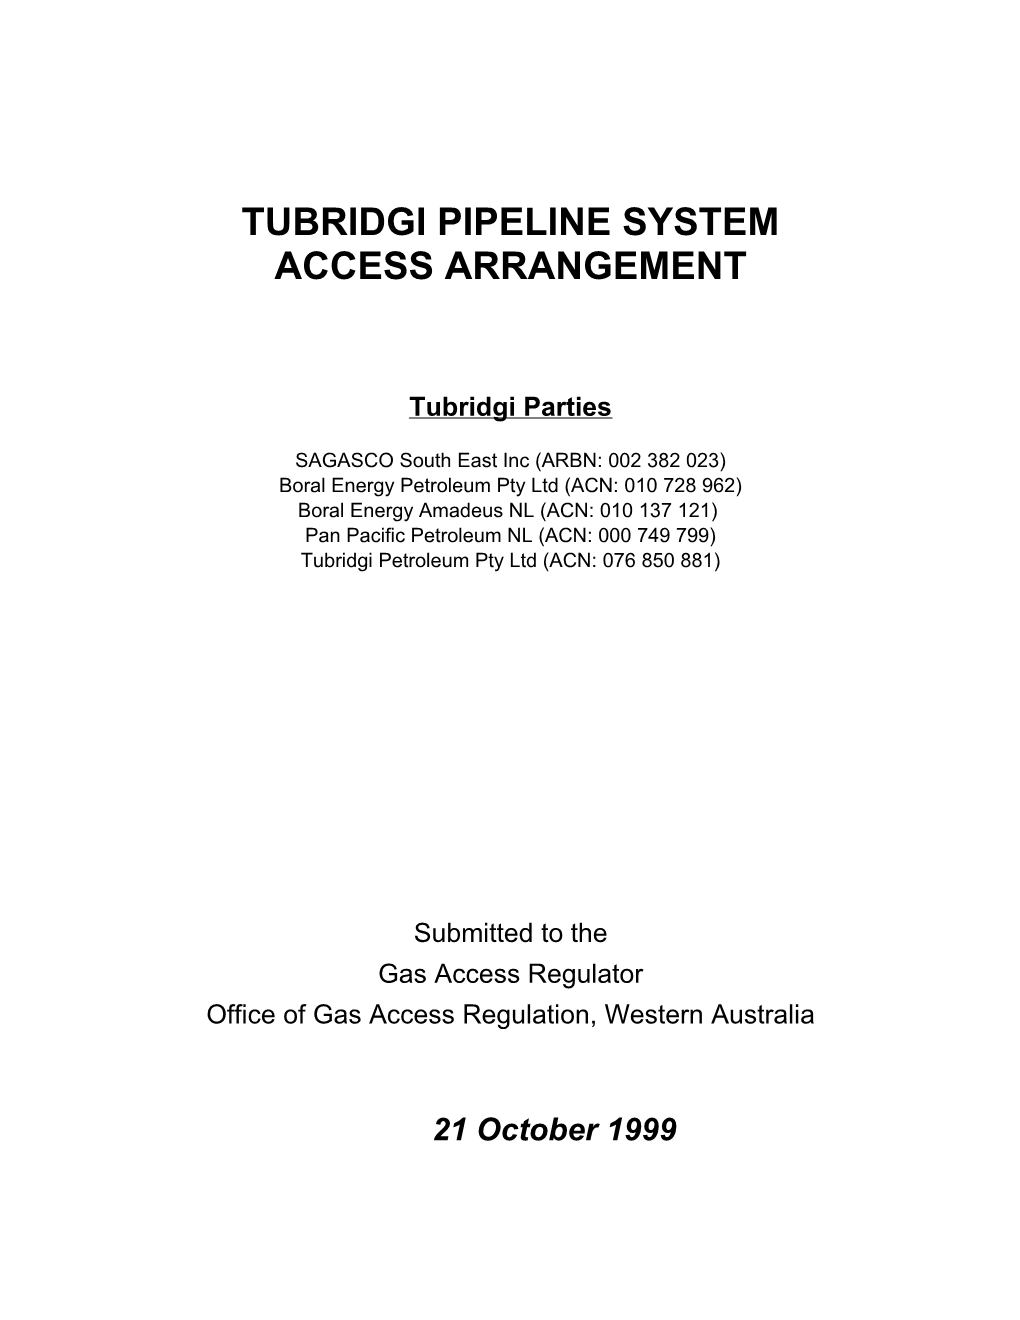 TUBRIDGI Pipeline Access Arrangement